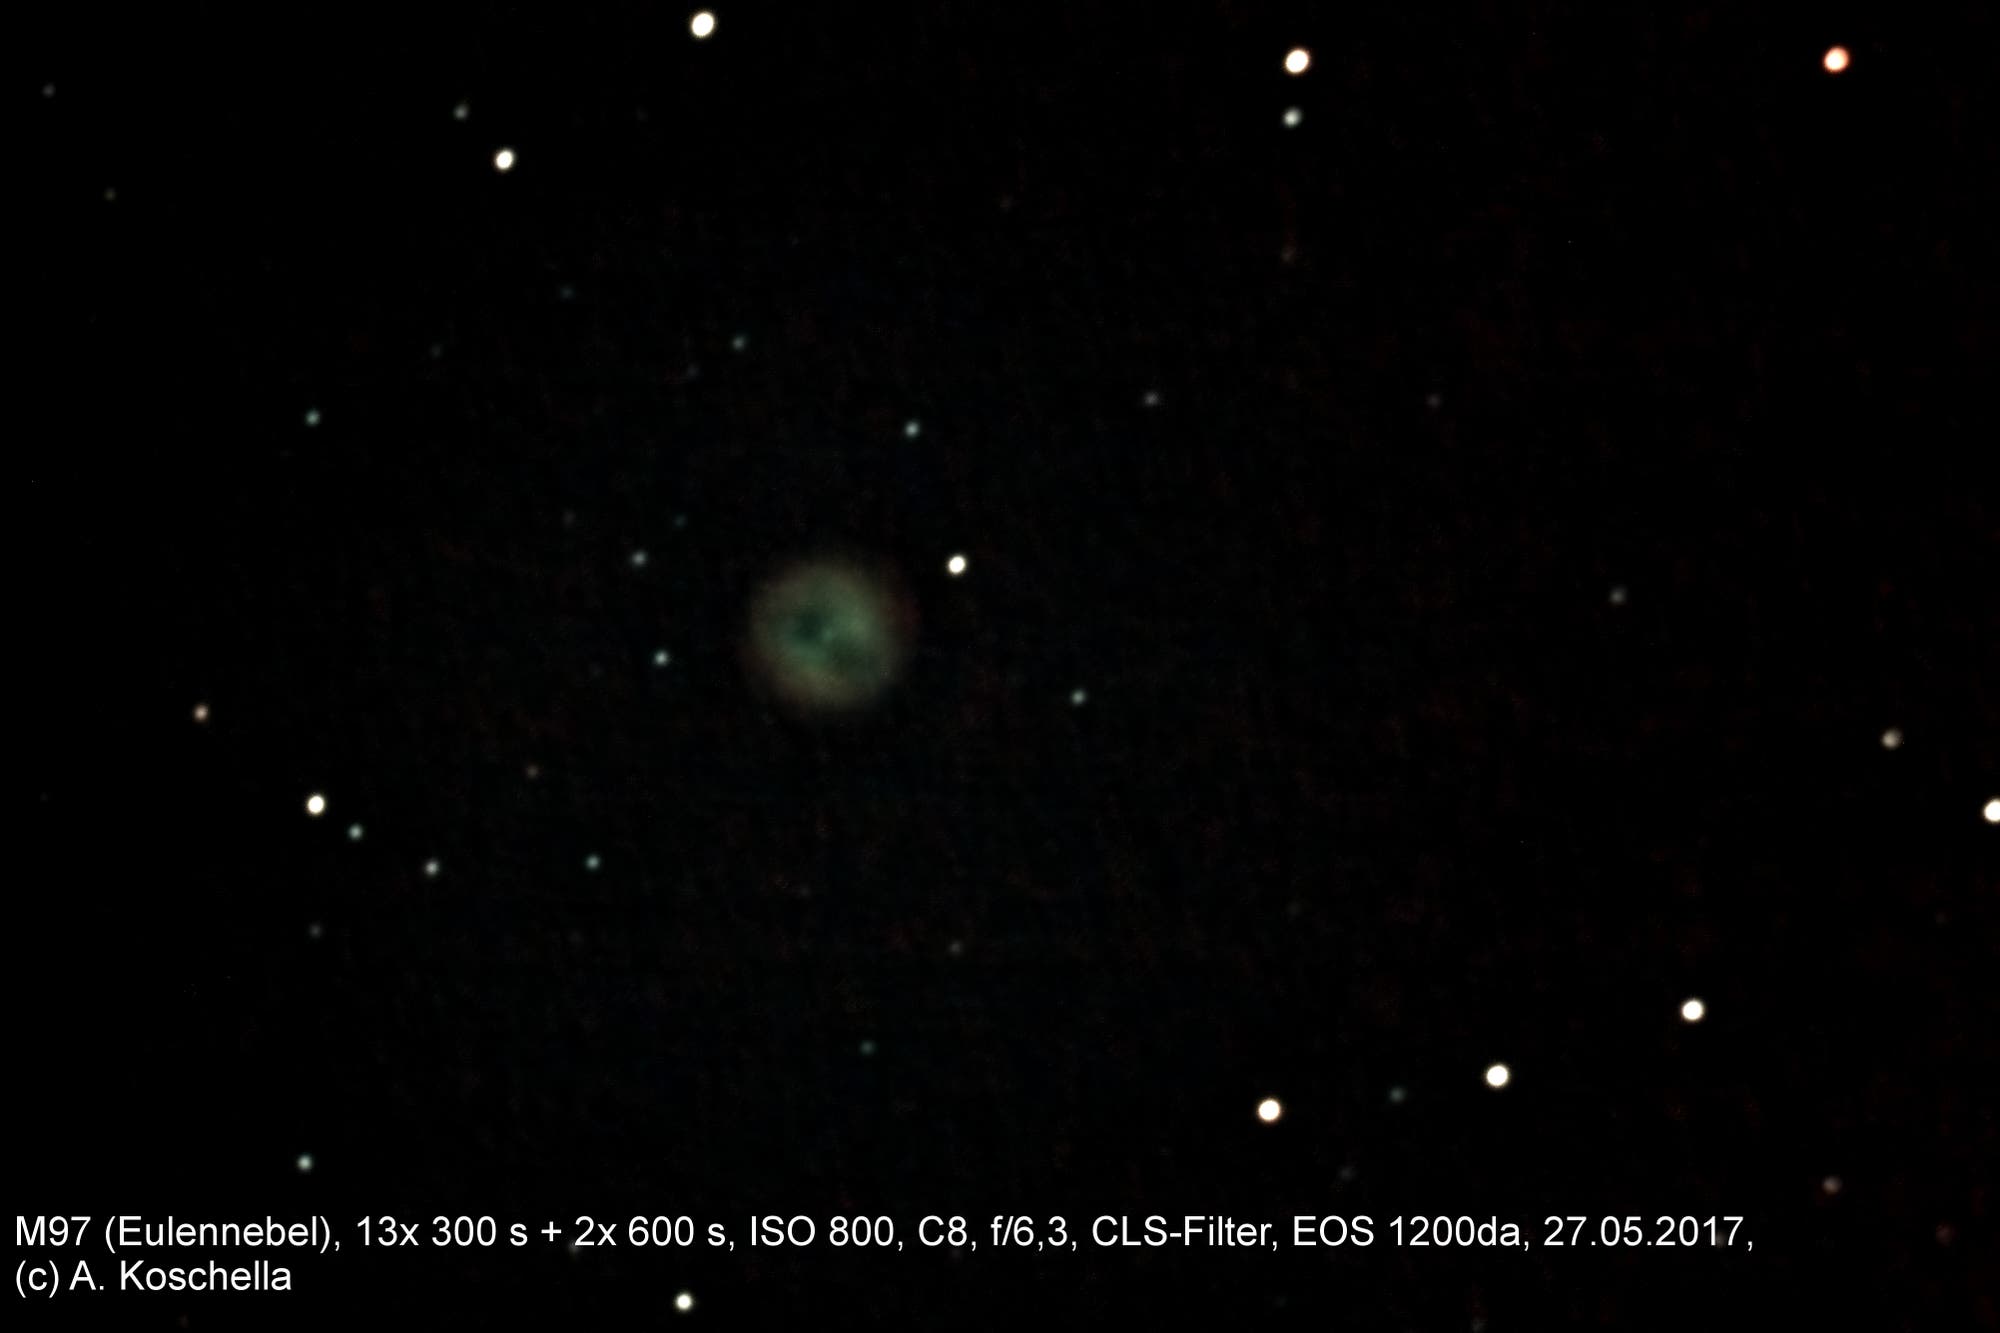 Eulennebel (Messier 97)